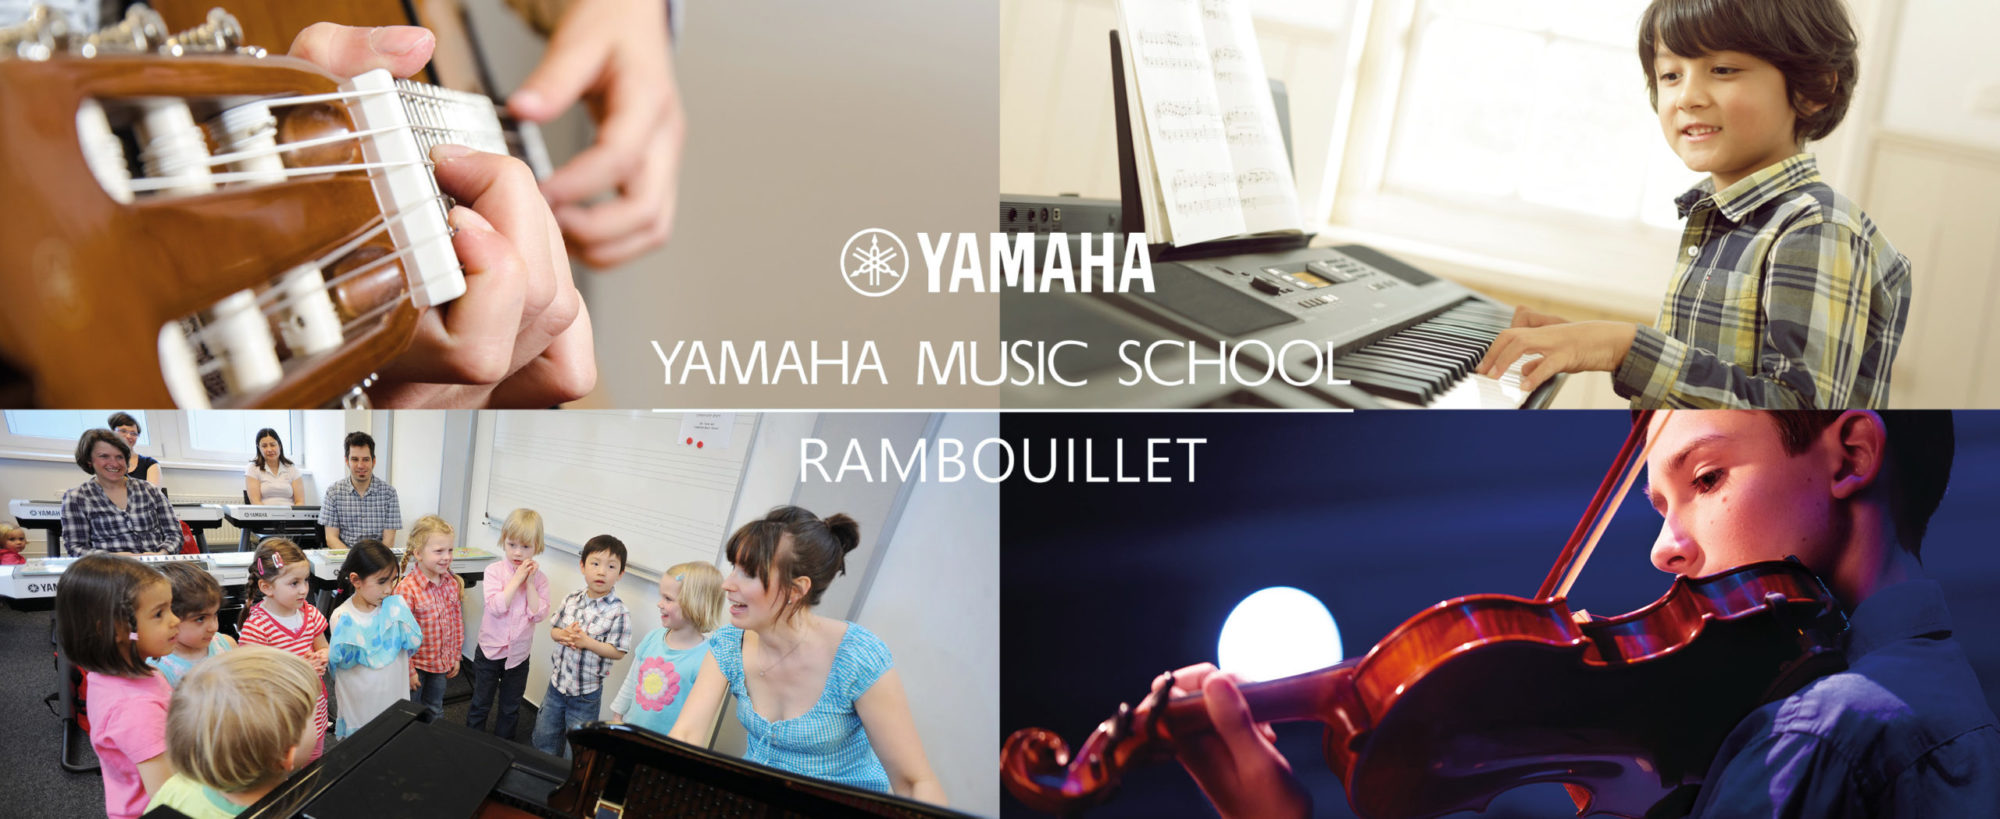 Yamaha Music School de Rambouillet